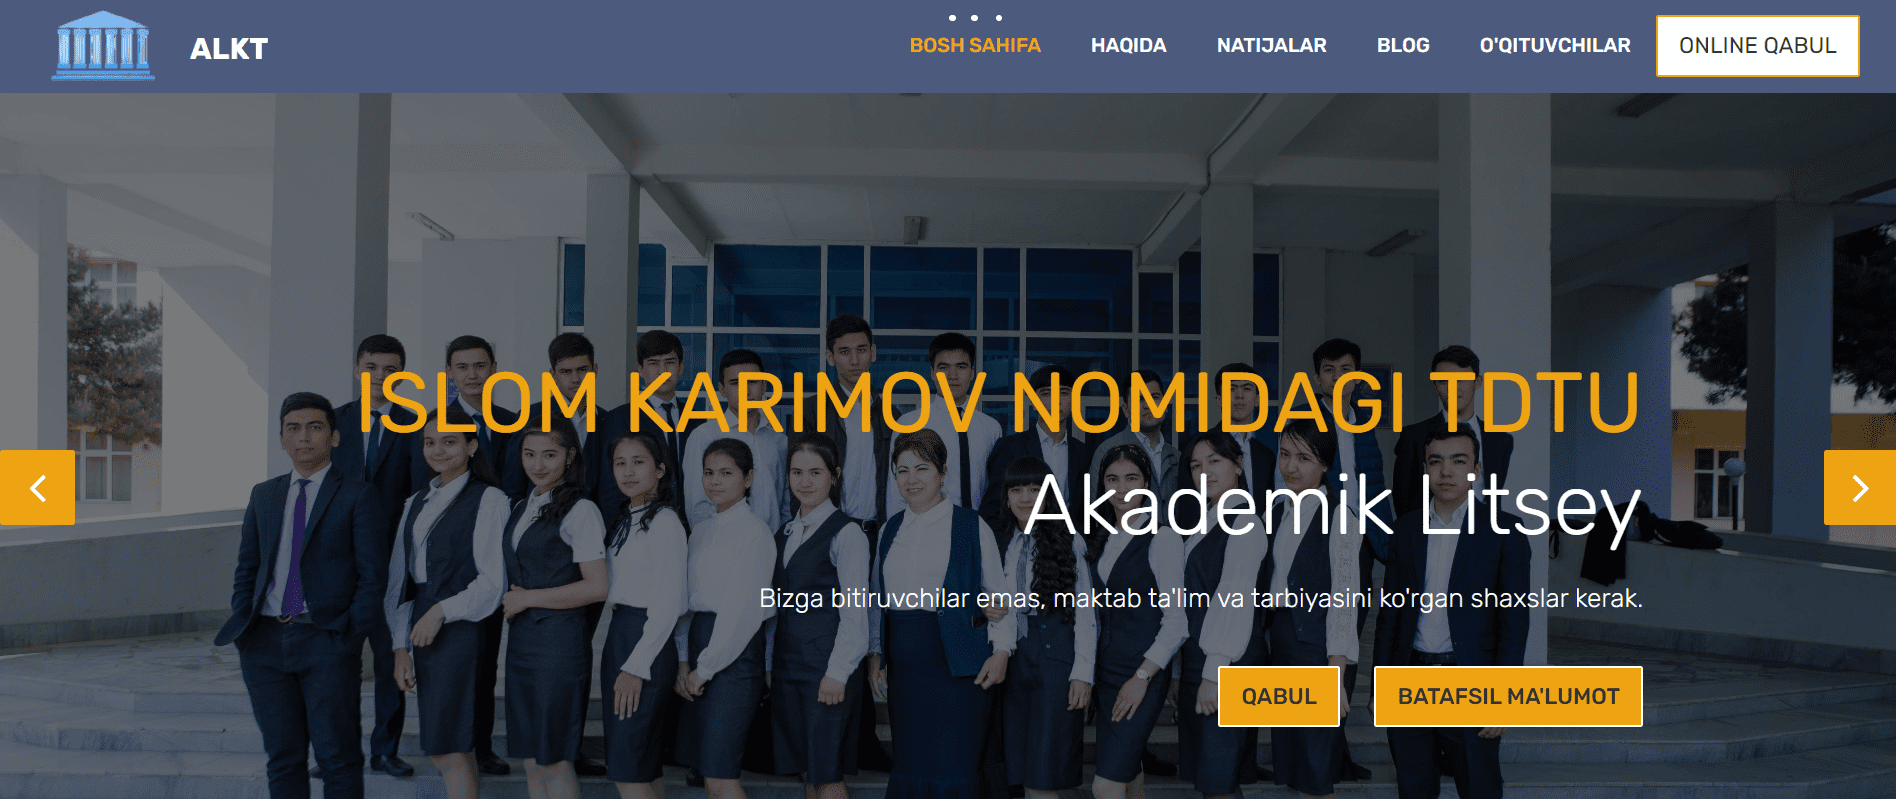 Академический лицей компьютерных технологий (alkt.uz) - официальный сайт